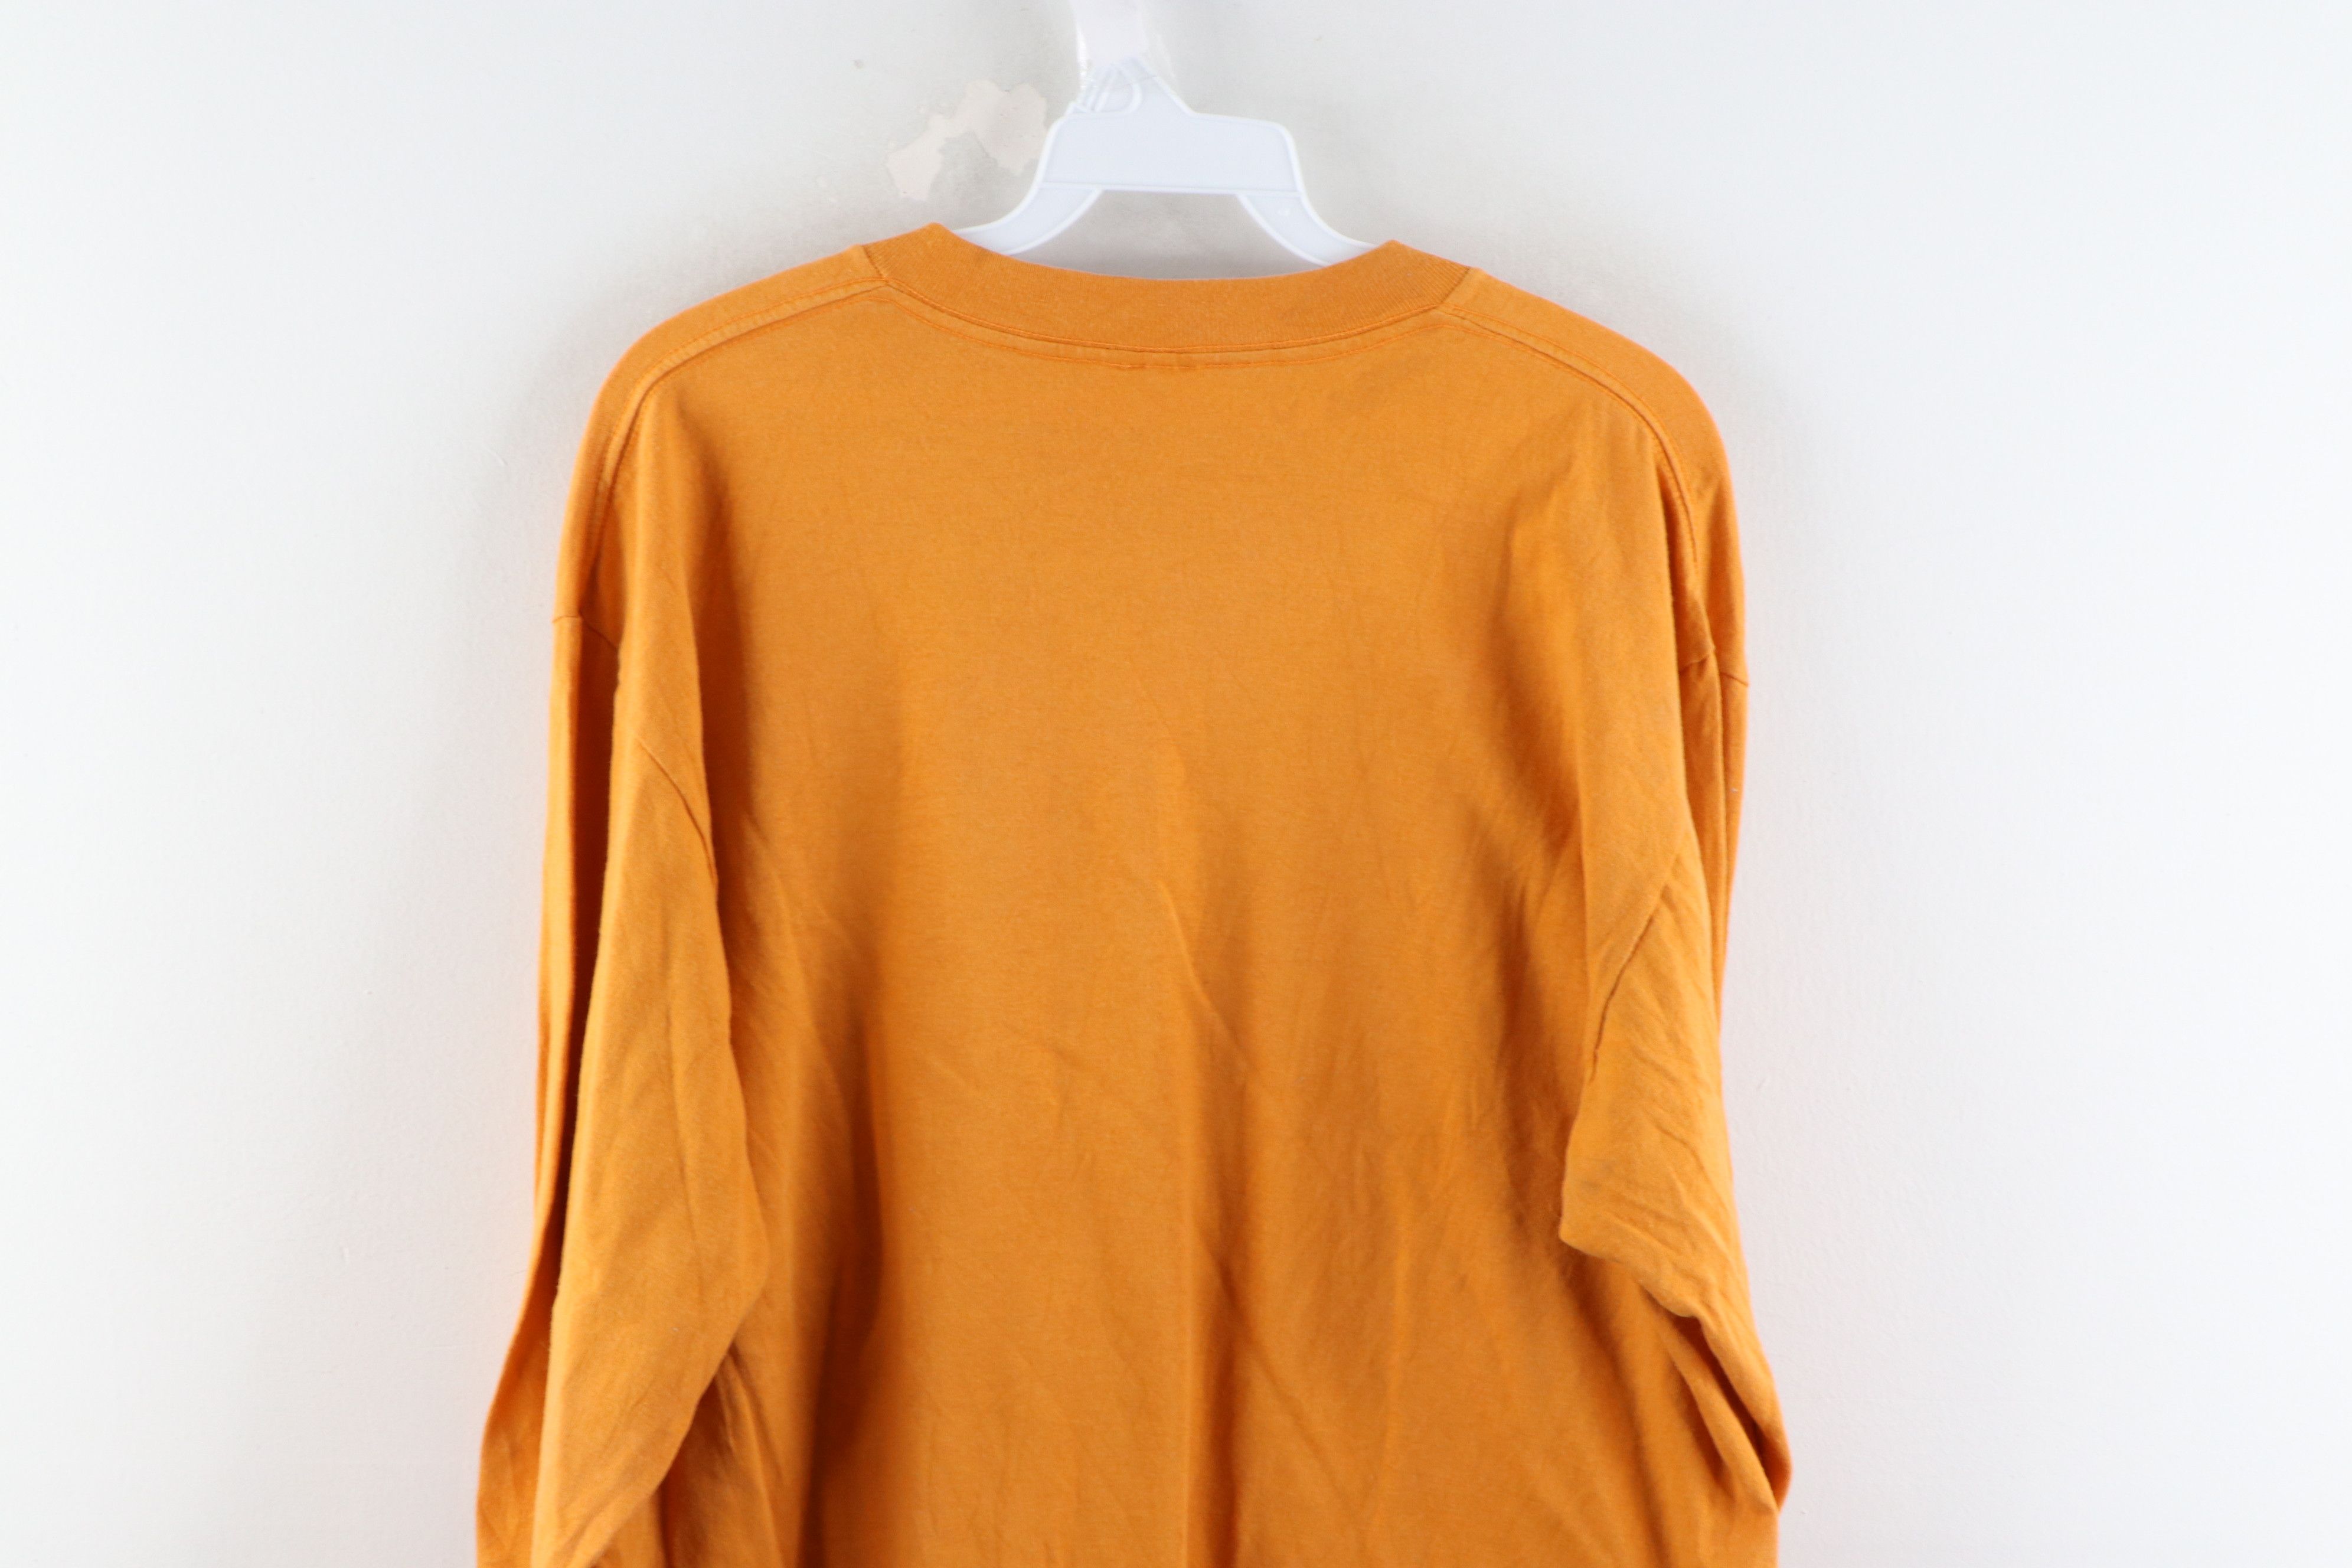 Vintage Vintage 90s Streetwear Blank Long Sleeve T-Shirt Gold Size US XL / EU 56 / 4 - 6 Thumbnail